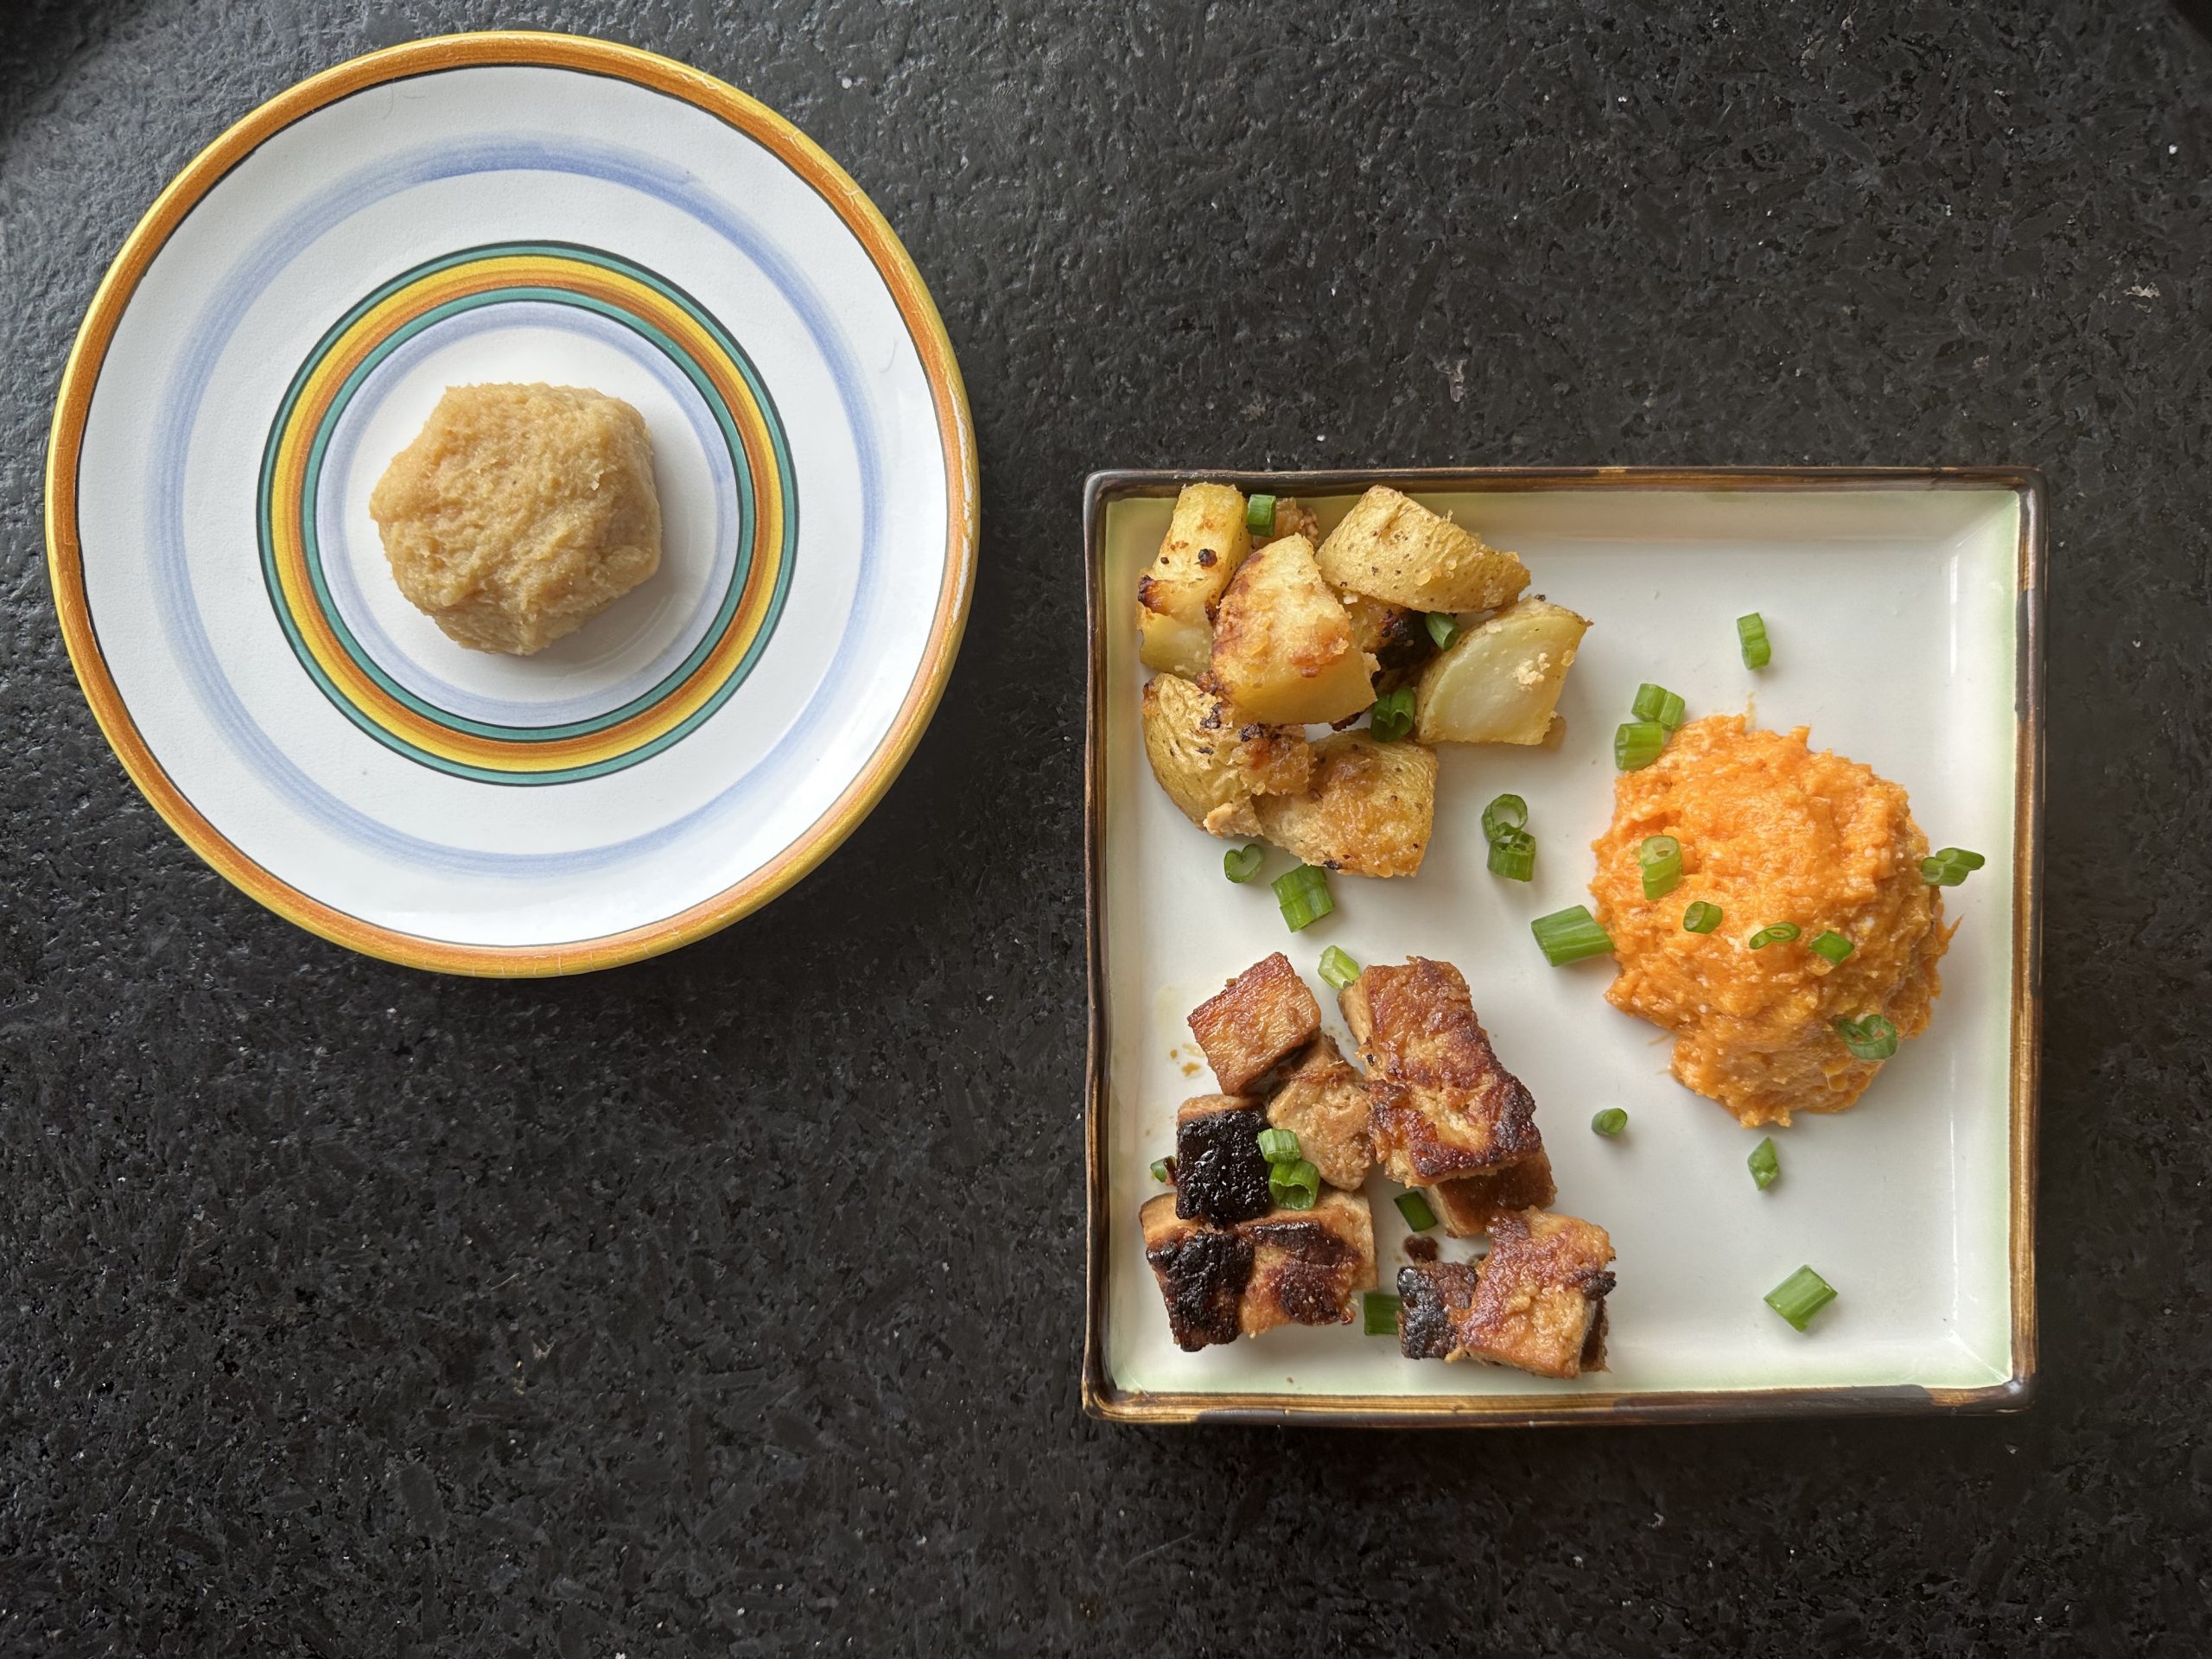 Ba món ăn với tương miso trắng: đậu hũ chiên tẩm miso với gừng và tỏi, khoai tây nướng bơ miso, và khoai lang nghiền với bơ miso. (Ảnh: Ari LeVaux)